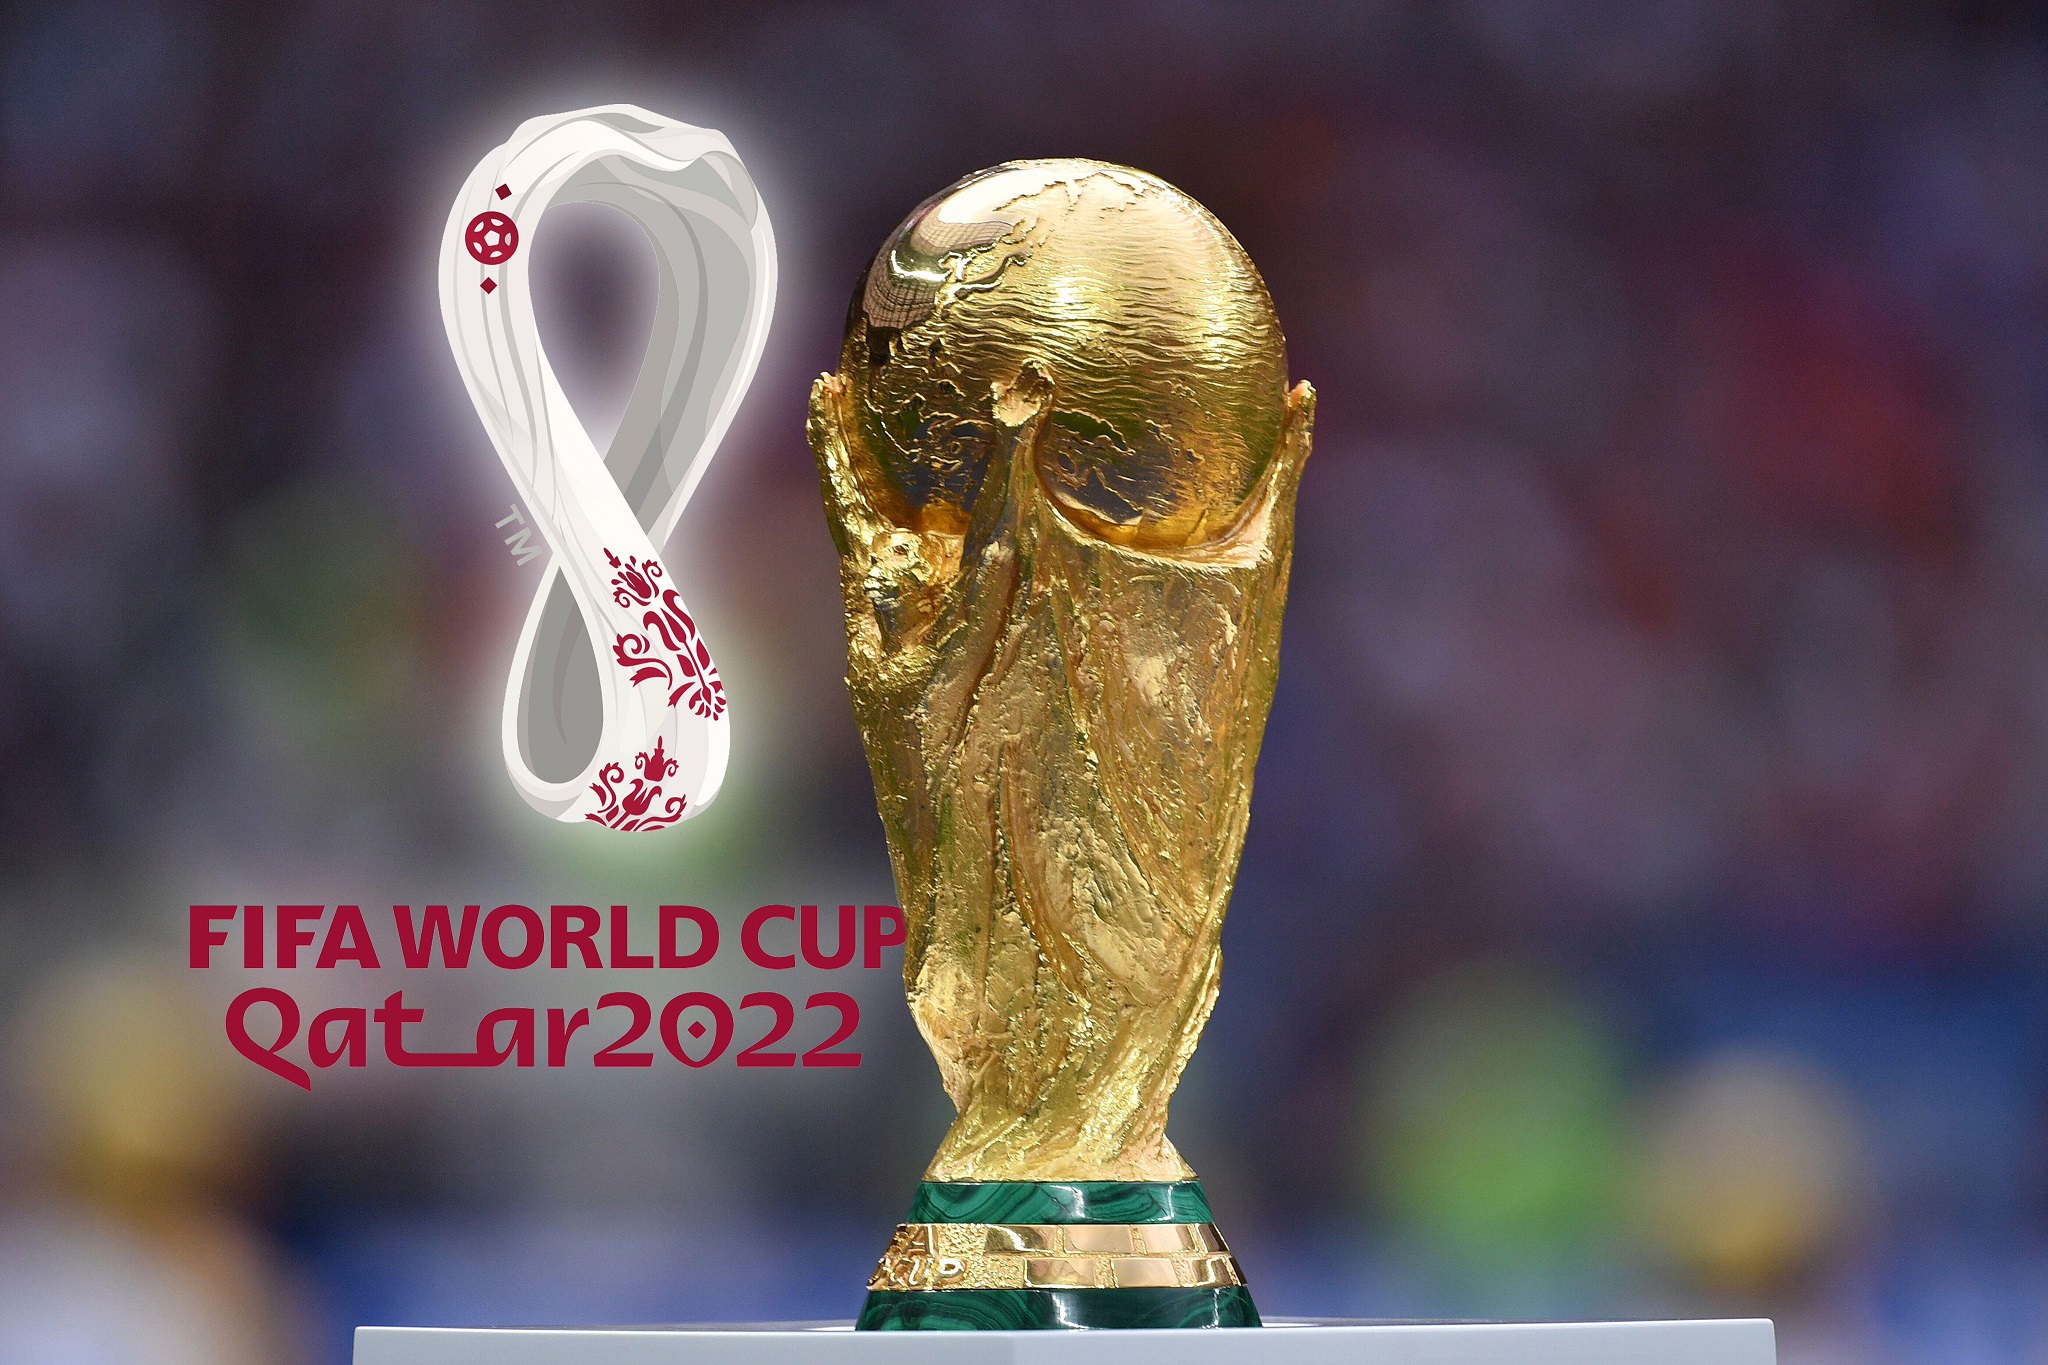 Chi phí tổ chức giải World Cup Qatar 2022 lên tới $220 tỷ, gấp 15 lần WC 2014 ở Brazil